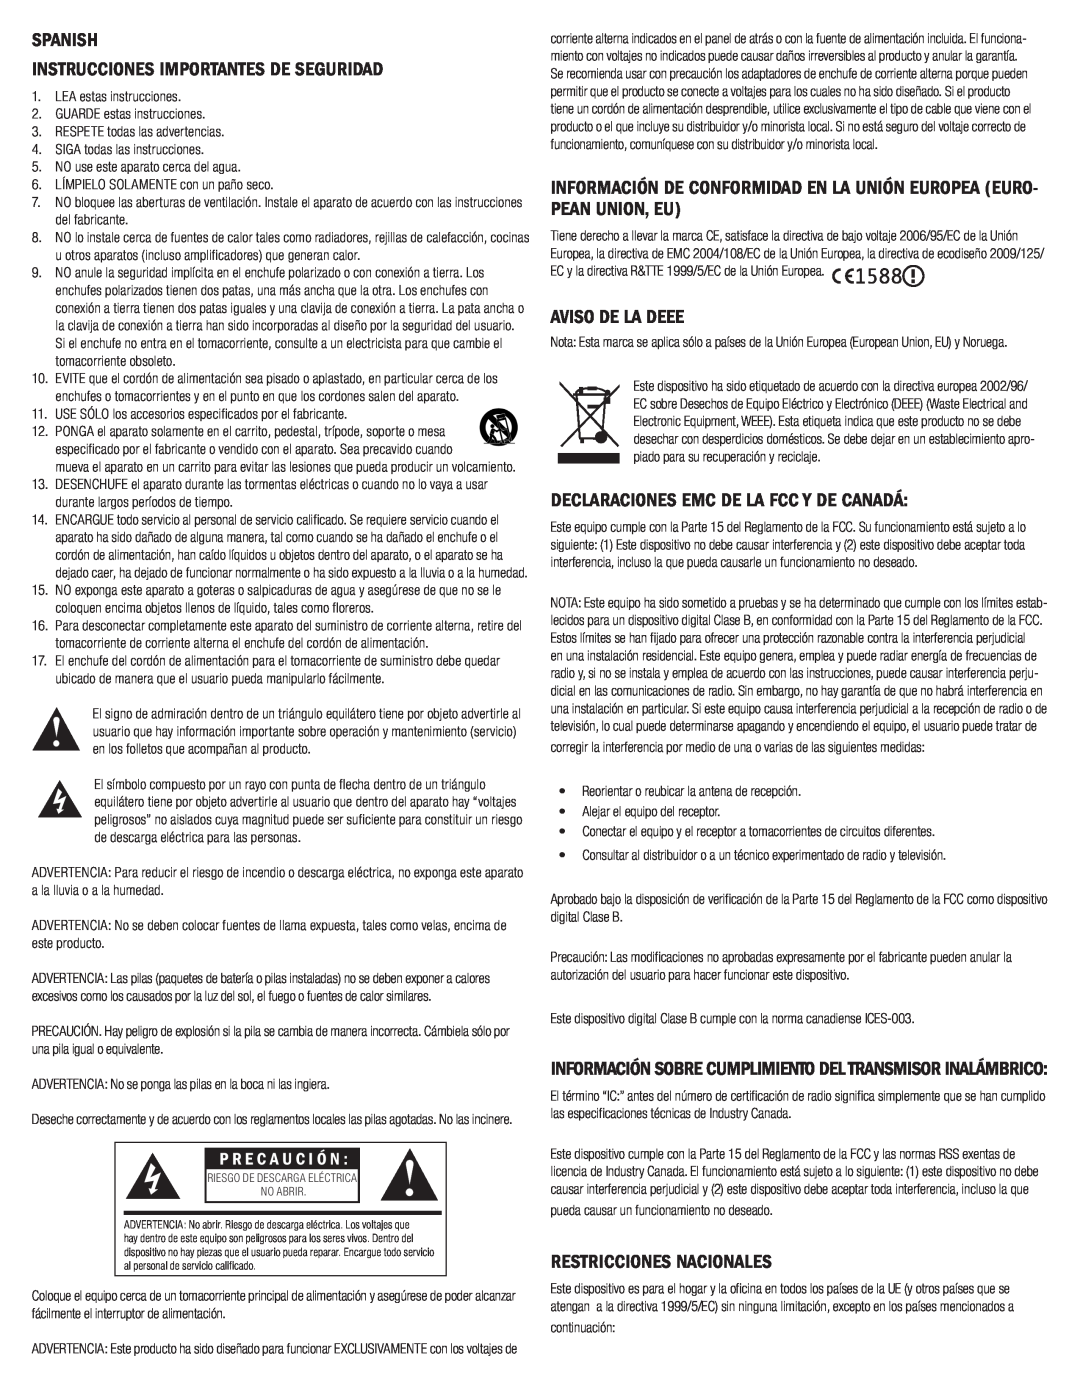 Klipsch G-17 AIR Spanish Instrucciones Importantes De Seguridad, Aviso De La Deee, Declaraciones Emc De La Fcc Y De Canadá 